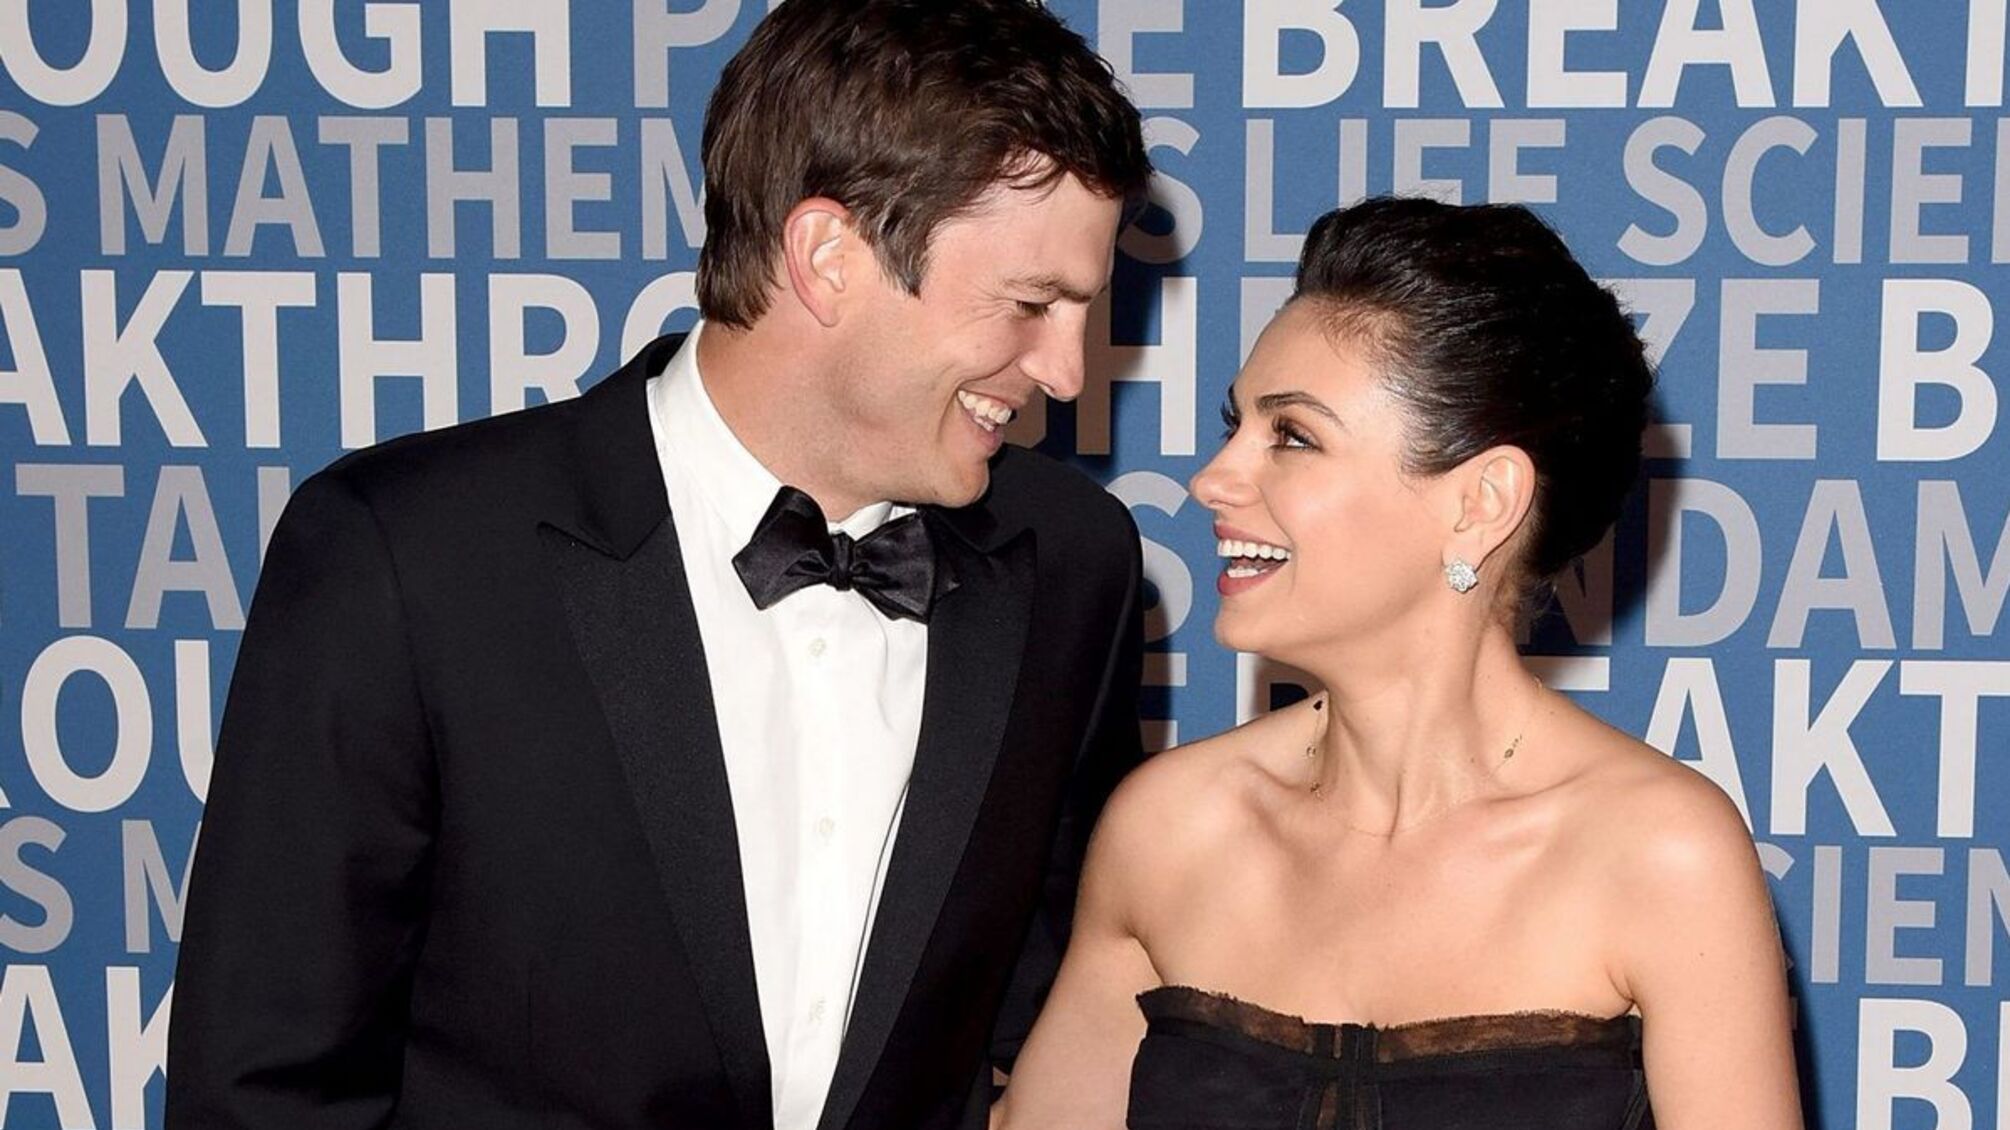 'Я самый счастливый человек': актер Эштон Катчер показал жену в особой позе